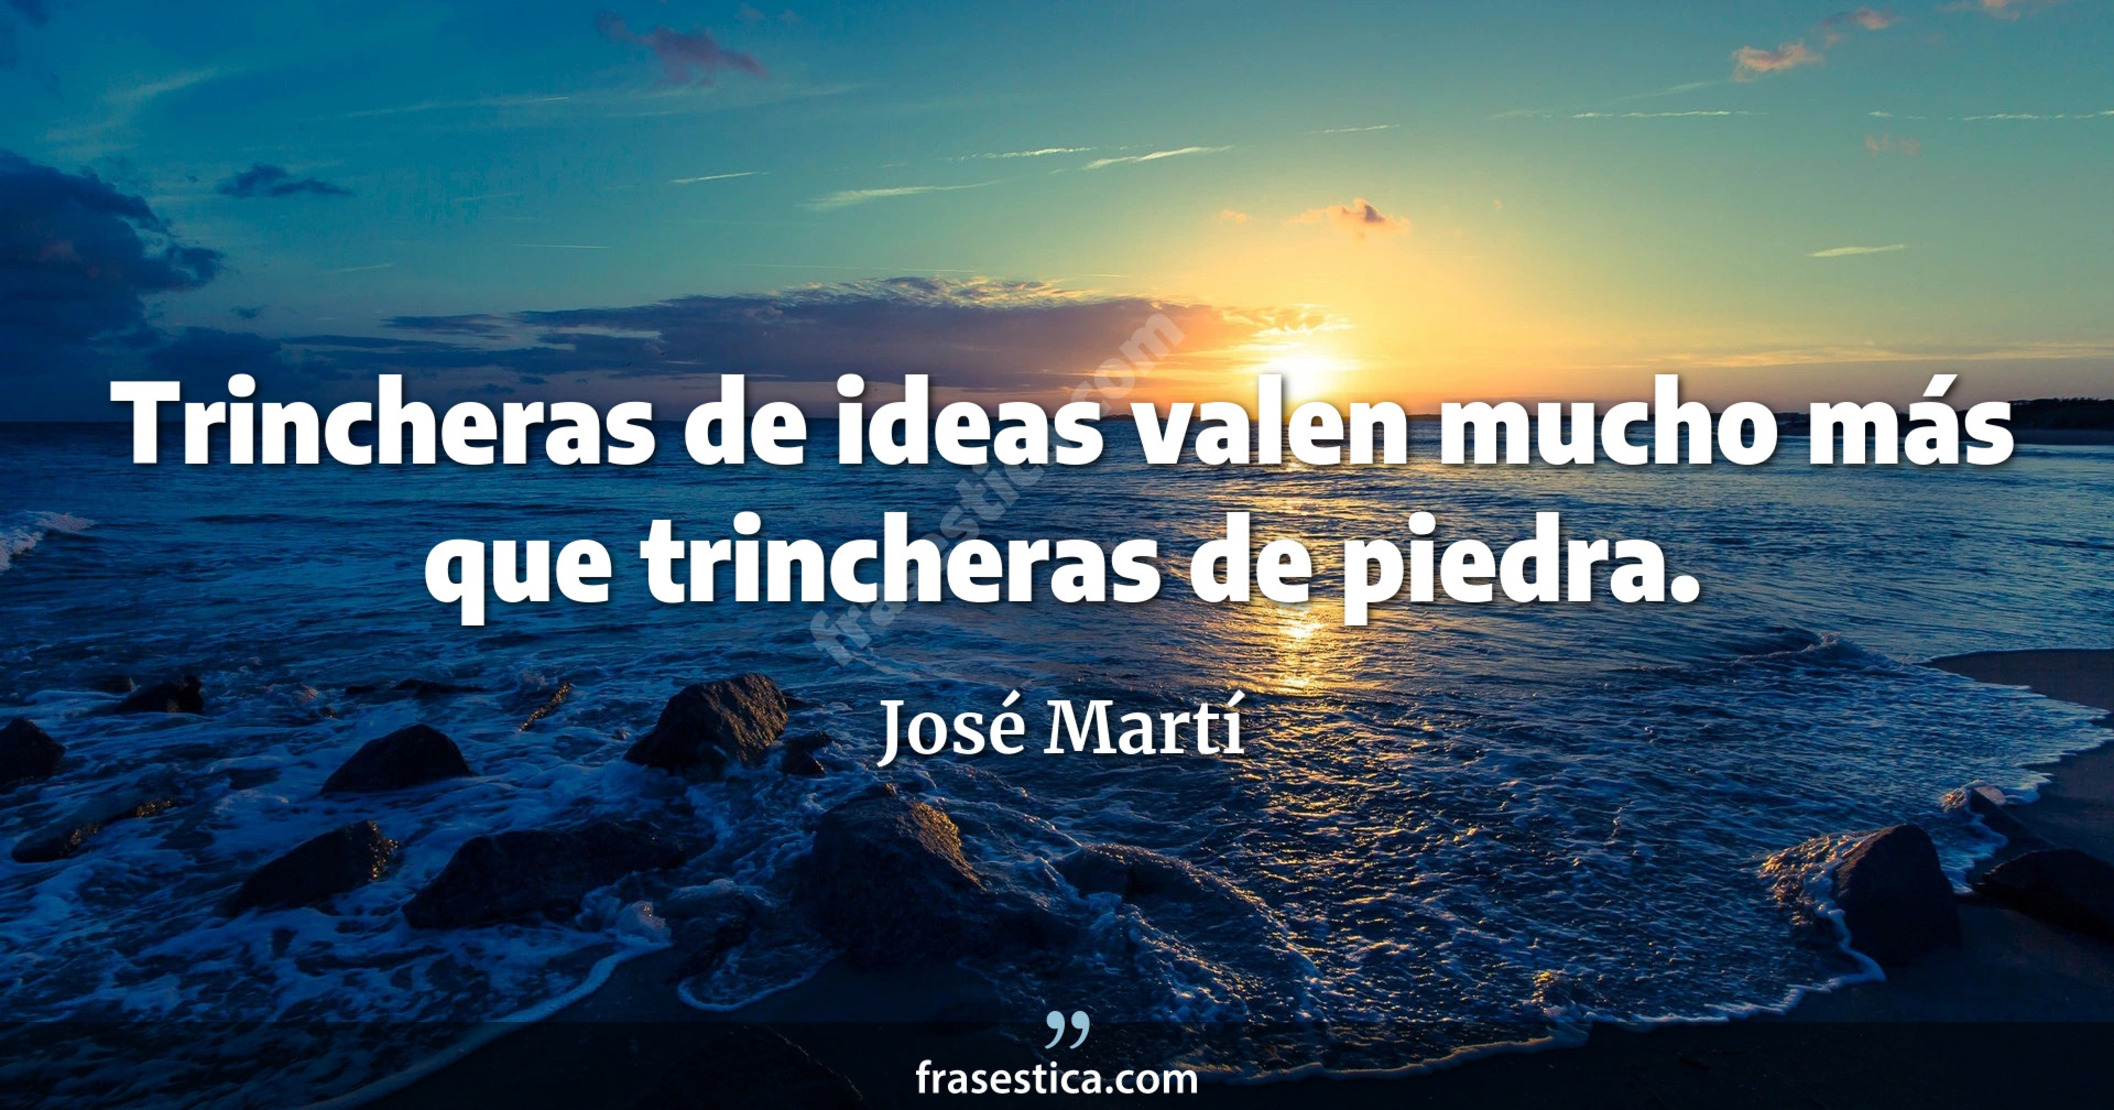 Trincheras de ideas valen mucho más que trincheras de piedra. - José Martí